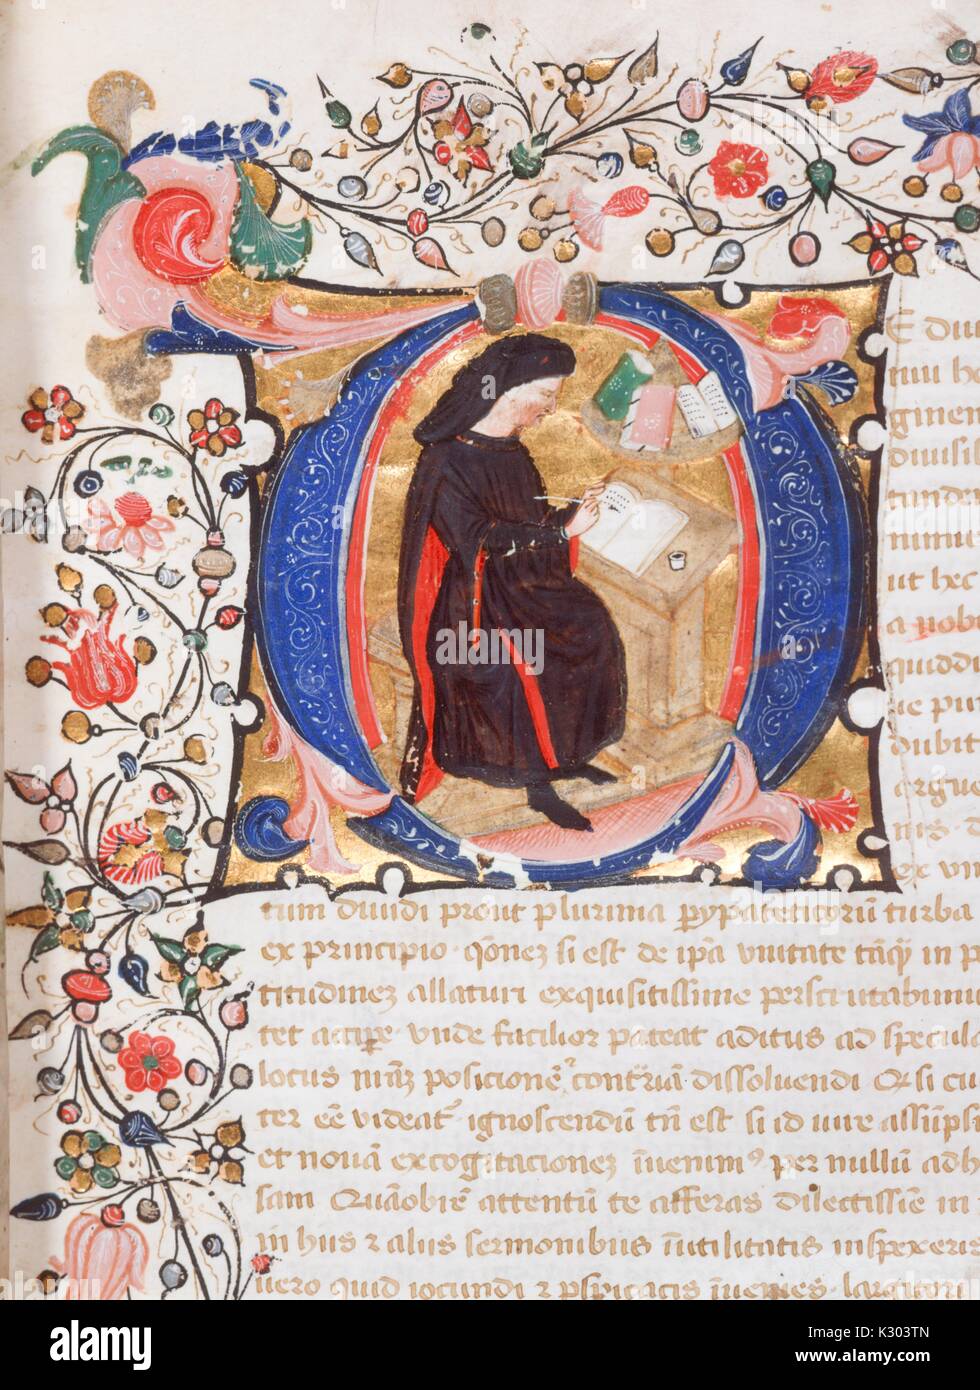 Manuscrit enluminé page contenant du texte, une frontière, ainsi qu'une illustration d'un scribe au travail, à partir de la 14e siècle manuscrit latin ate livre écrit en Italie, 1380. Banque D'Images